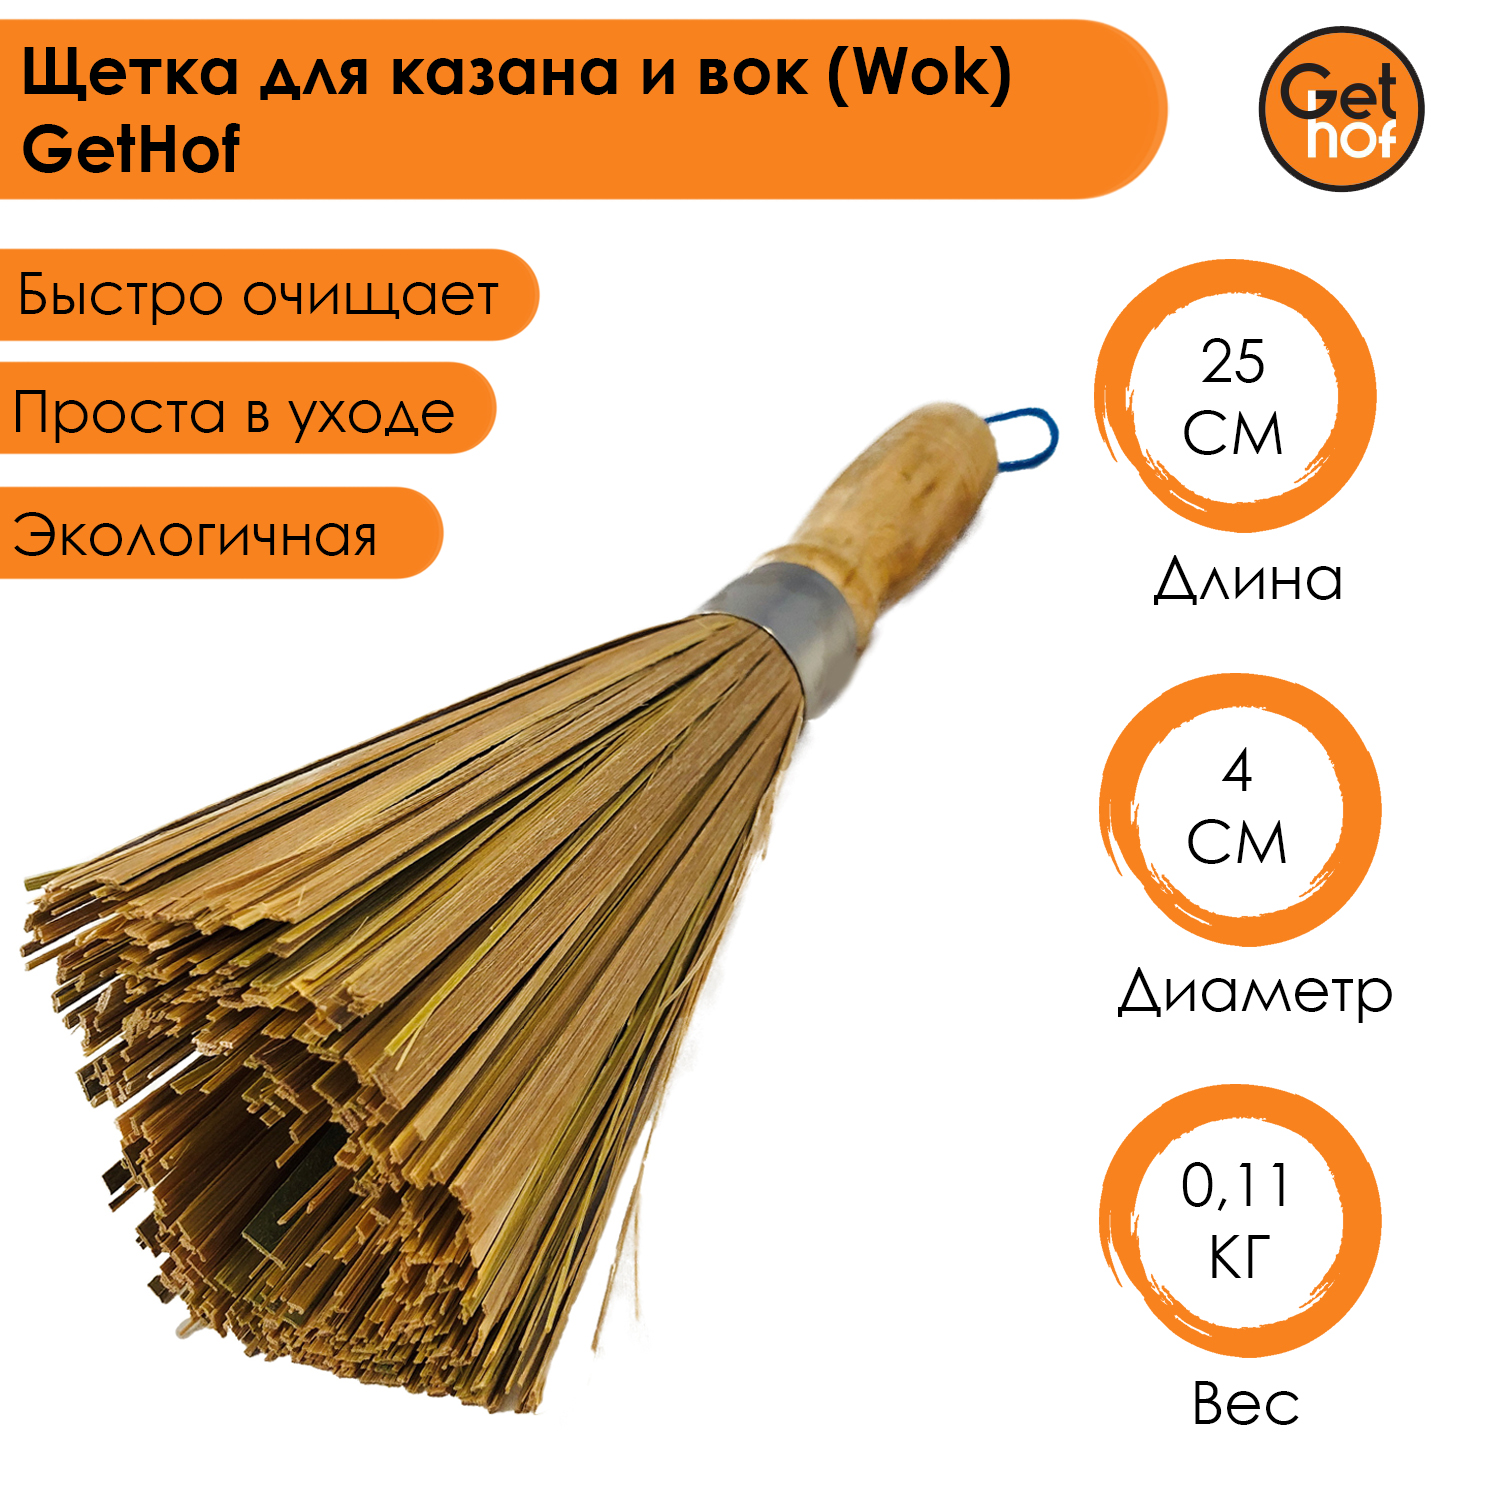 Щетка для вок Wok GetHof из бамбука 25 см